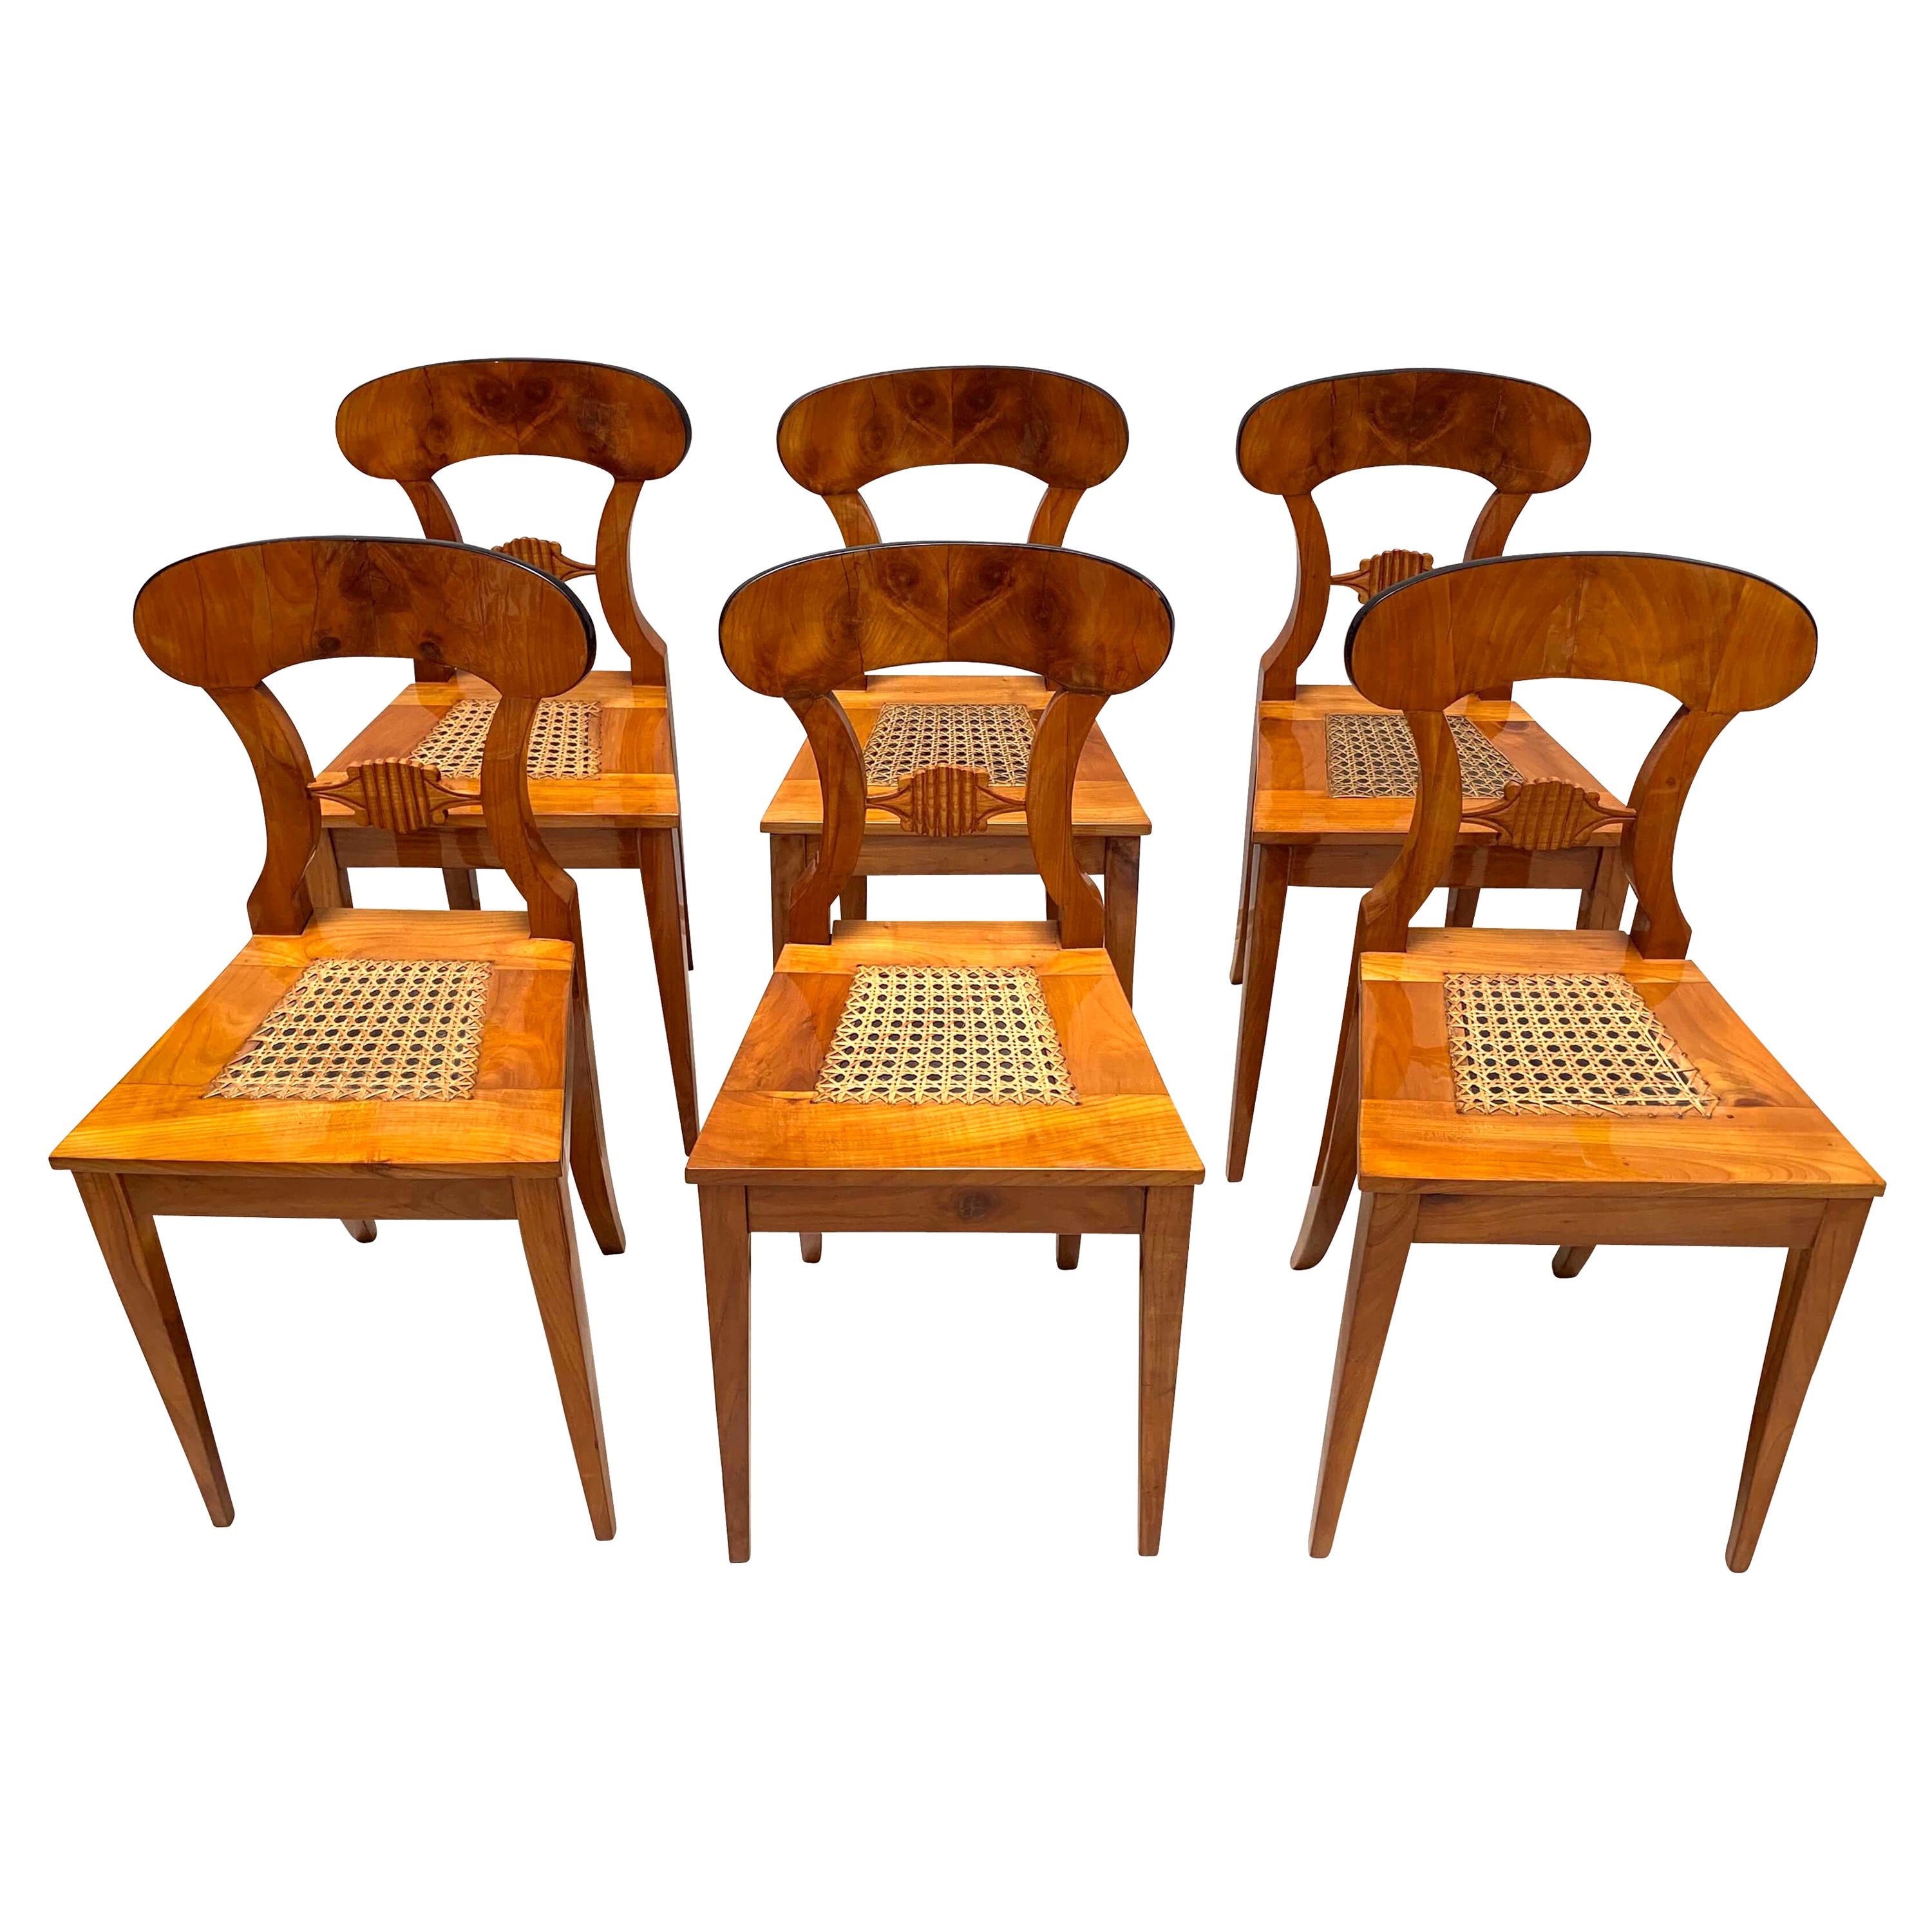 Magnifique ensemble de six chaises Biedermeier de Vienne, Autriche, vers 1830.

Merveilleux placage de cerisier brillant (pelle) et bois massif (cadre et pieds). 
Placage de cerisier assorti aux livres sur les pelles. 
Pieds longs et légèrement